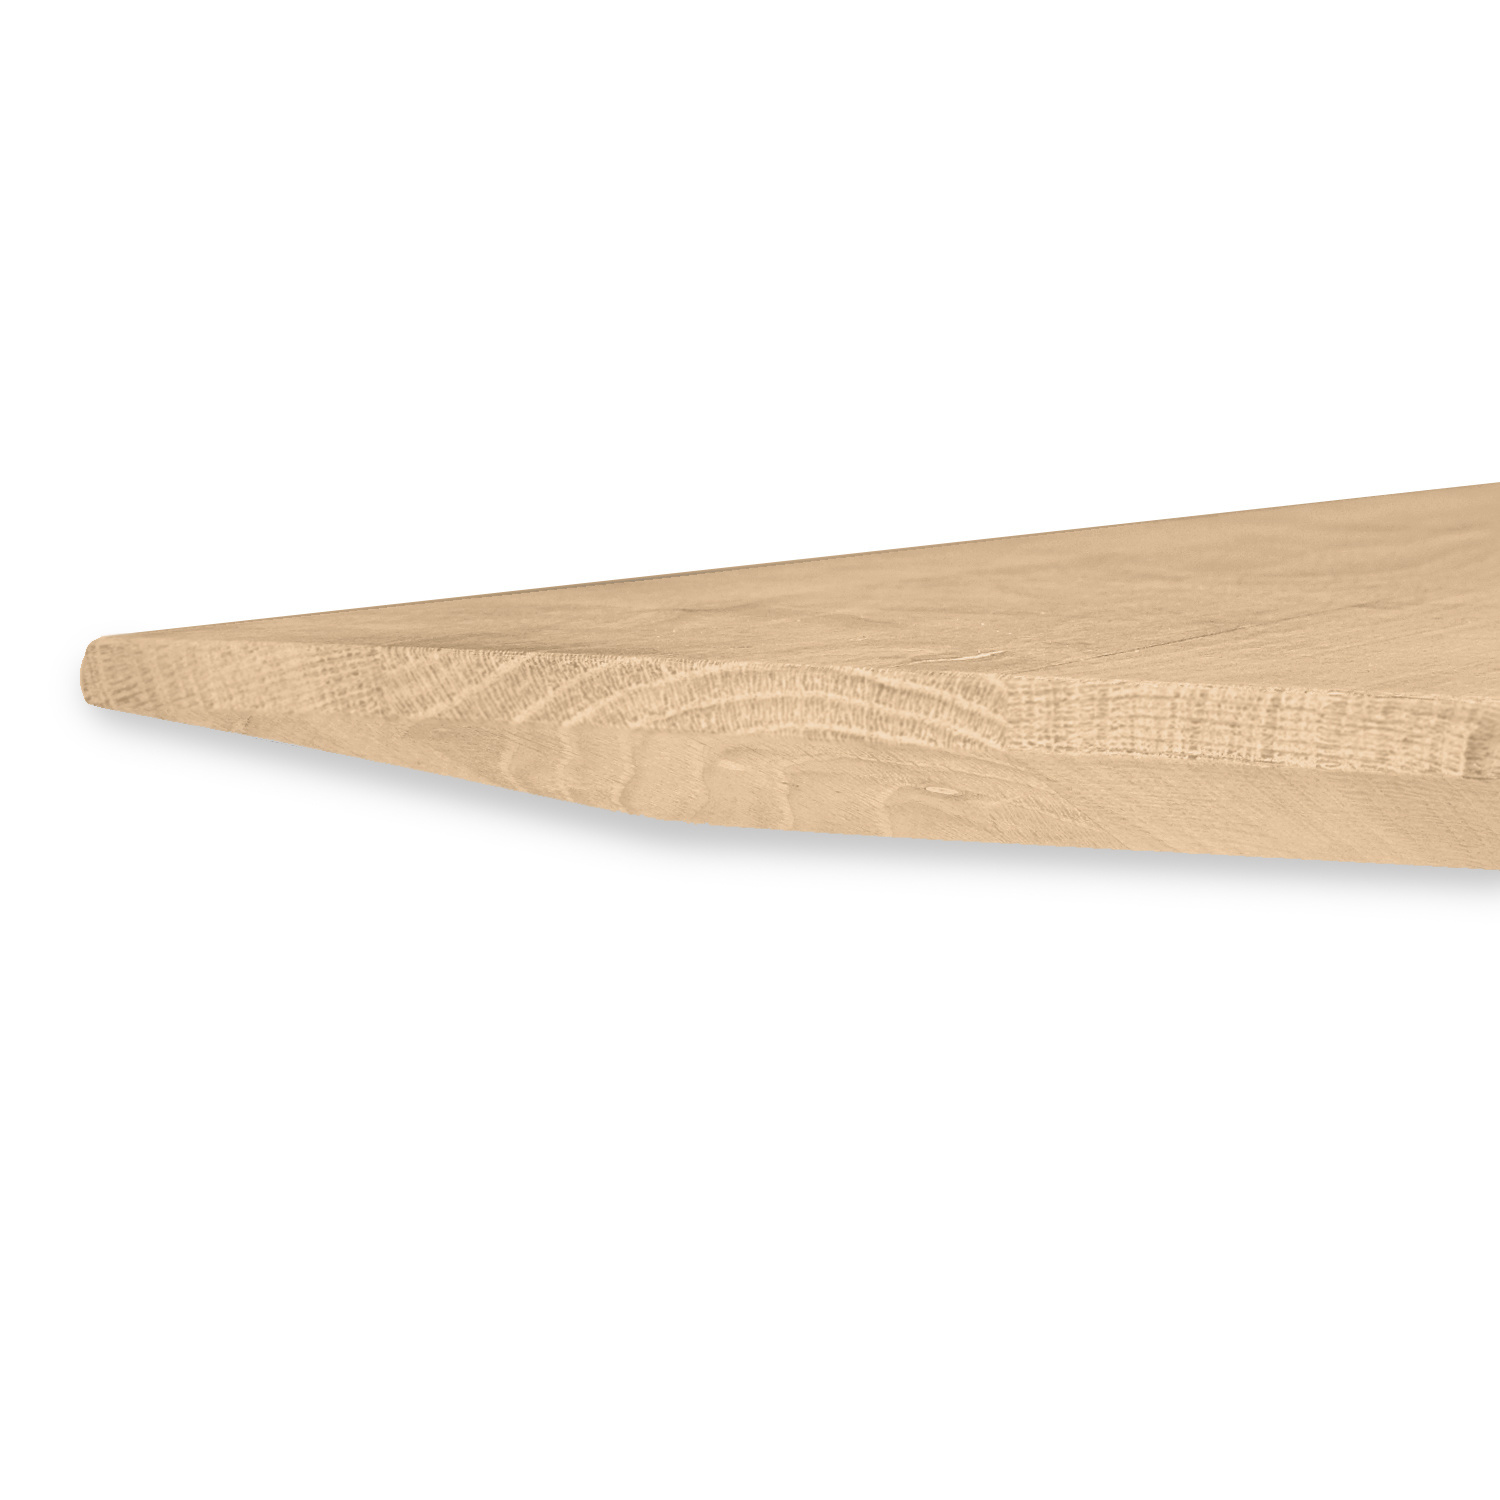  Tischplatte Eiche - Schweizer Kante - 2,7 cm dick (1-Schicht) - Breite Lamellen (10 - 12 cm breit) - Eichenholz A-Qualität - verleimt & künstlich getrocknet (HF 8-12%) - verschiedene Größen